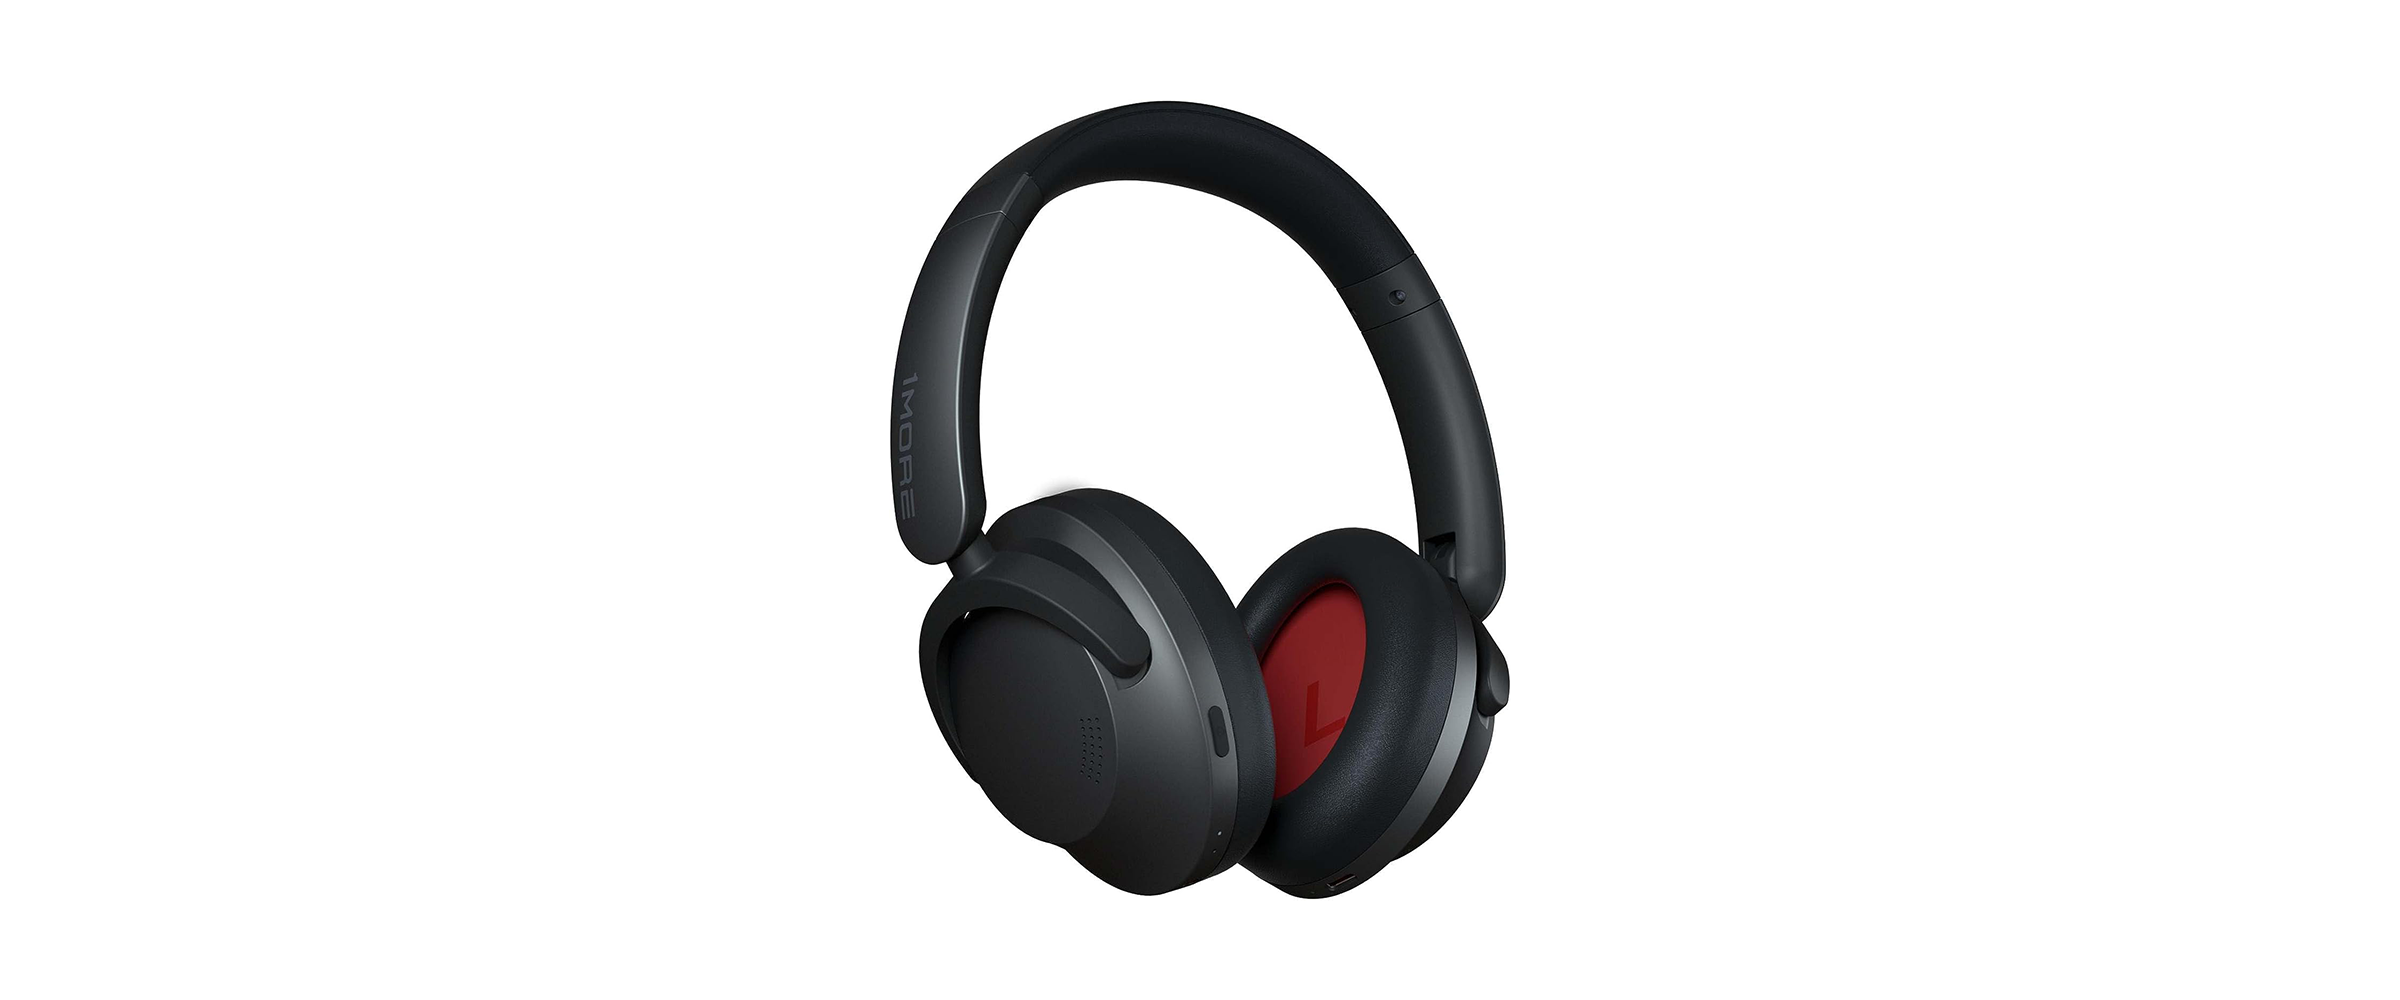 Die Over-Ear-Kopfhörere 1 More Sonoflow in der Farbe Schwarz vor weißem Hintergrund.